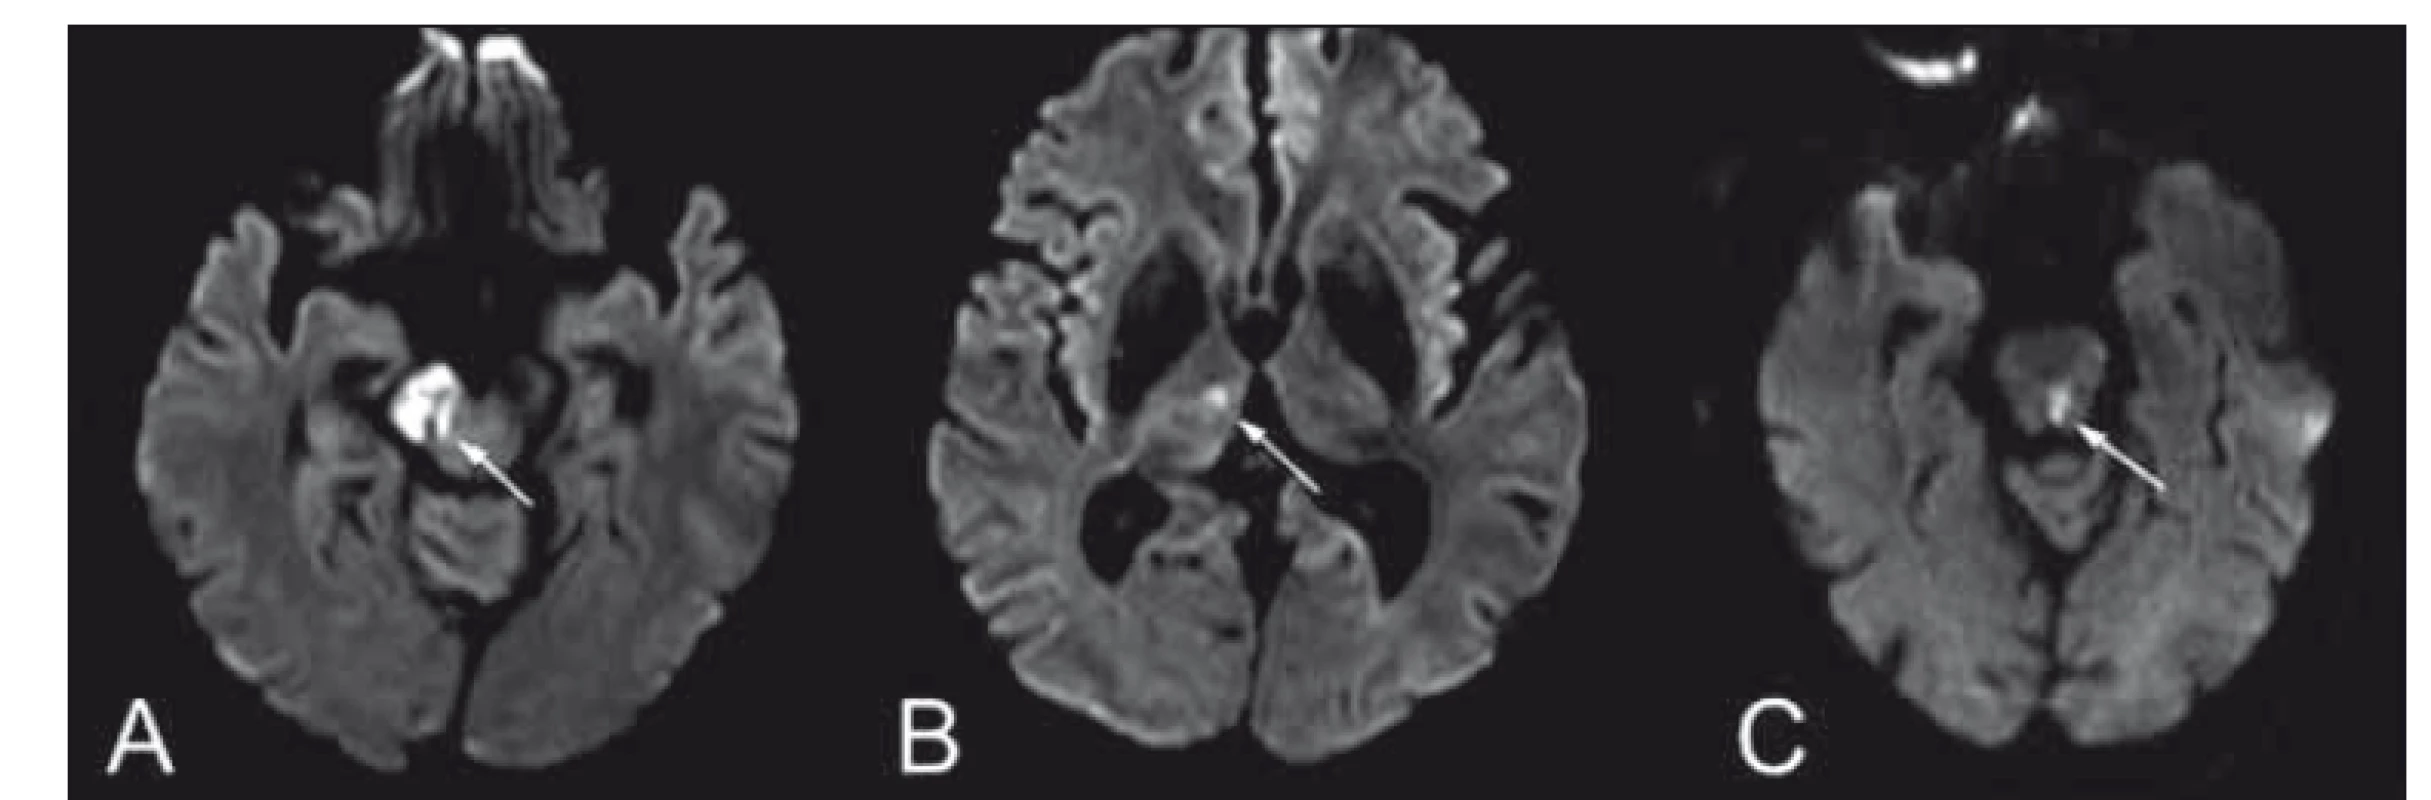 (A, B) Difuzí vážené obrazy MR – Weberův syndrom kombinovaný s talamickou
ischemií a (C) mediodorzální mezencefalický syndrom, spojený s okohybnou poruchou
- pravý bulbus deviován laterálně, levý bulbus s parézou mediálního pohledu, přítomen
dyskonjugovaný pohyb bulbů, nystagmus při vertikálním pohledu vzhůru, kvadruataxie
akcentovaná vpravo a dysartrie.<br>
Fig. 8. (A, B) Diff usion weighted MRIshowing an image of Weber syndrome in
combination with thalamic ischemia. (C) Mediodorsal mesencephalic syndrome
involving ophthalmoparesis – right eyeball deviated laterally, paresis of the medial
movement of the left eyeball, disconjugated eye movement, vertical upper gaze
nystagmus, quadriataxia and dysarthria.